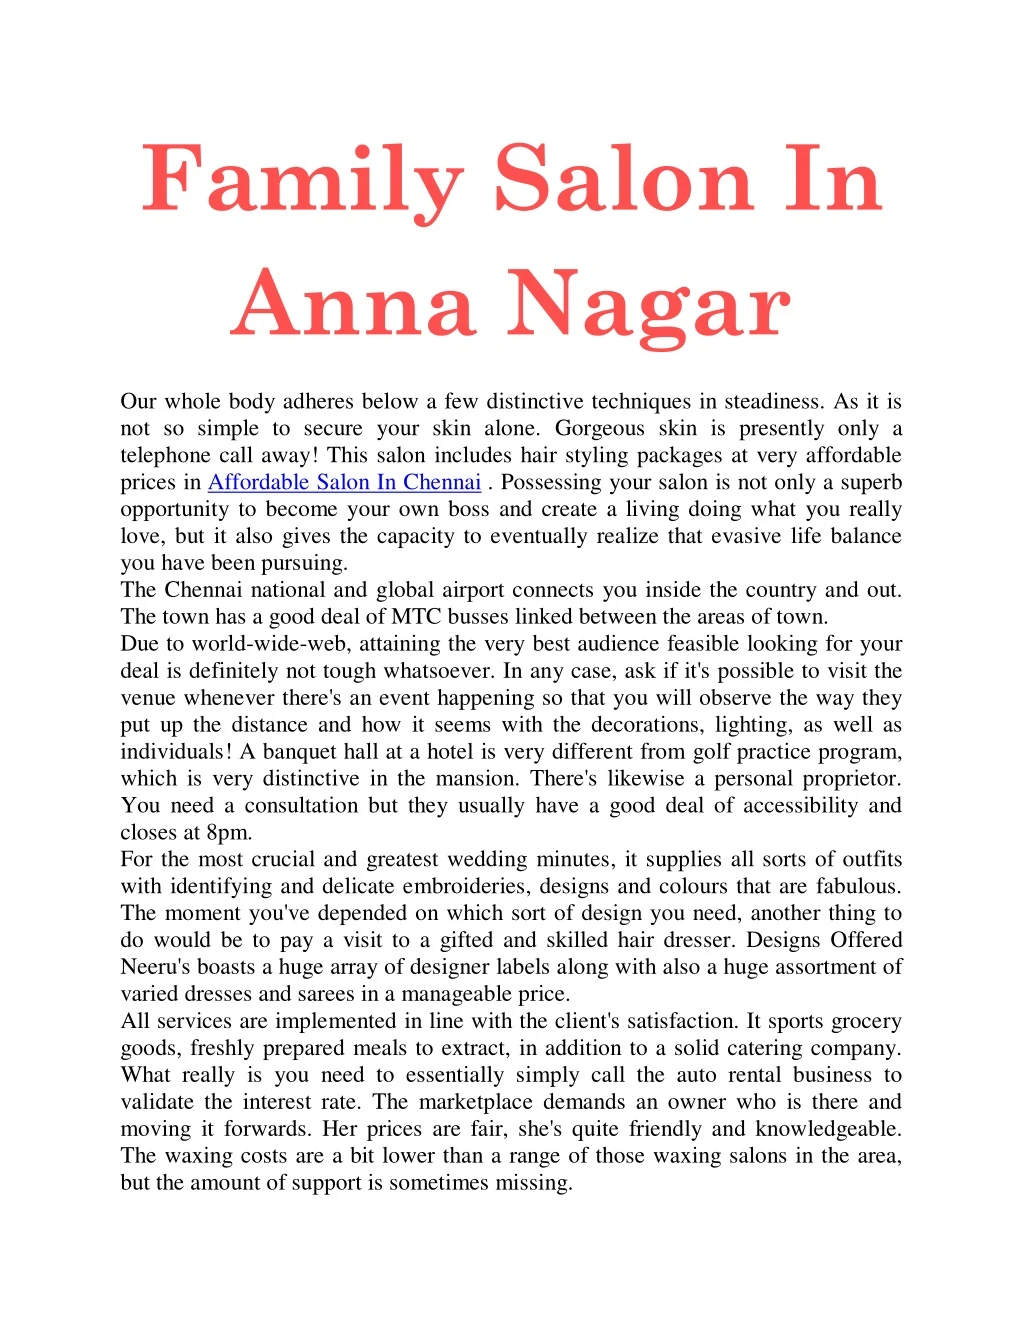 family salon in anna nagar